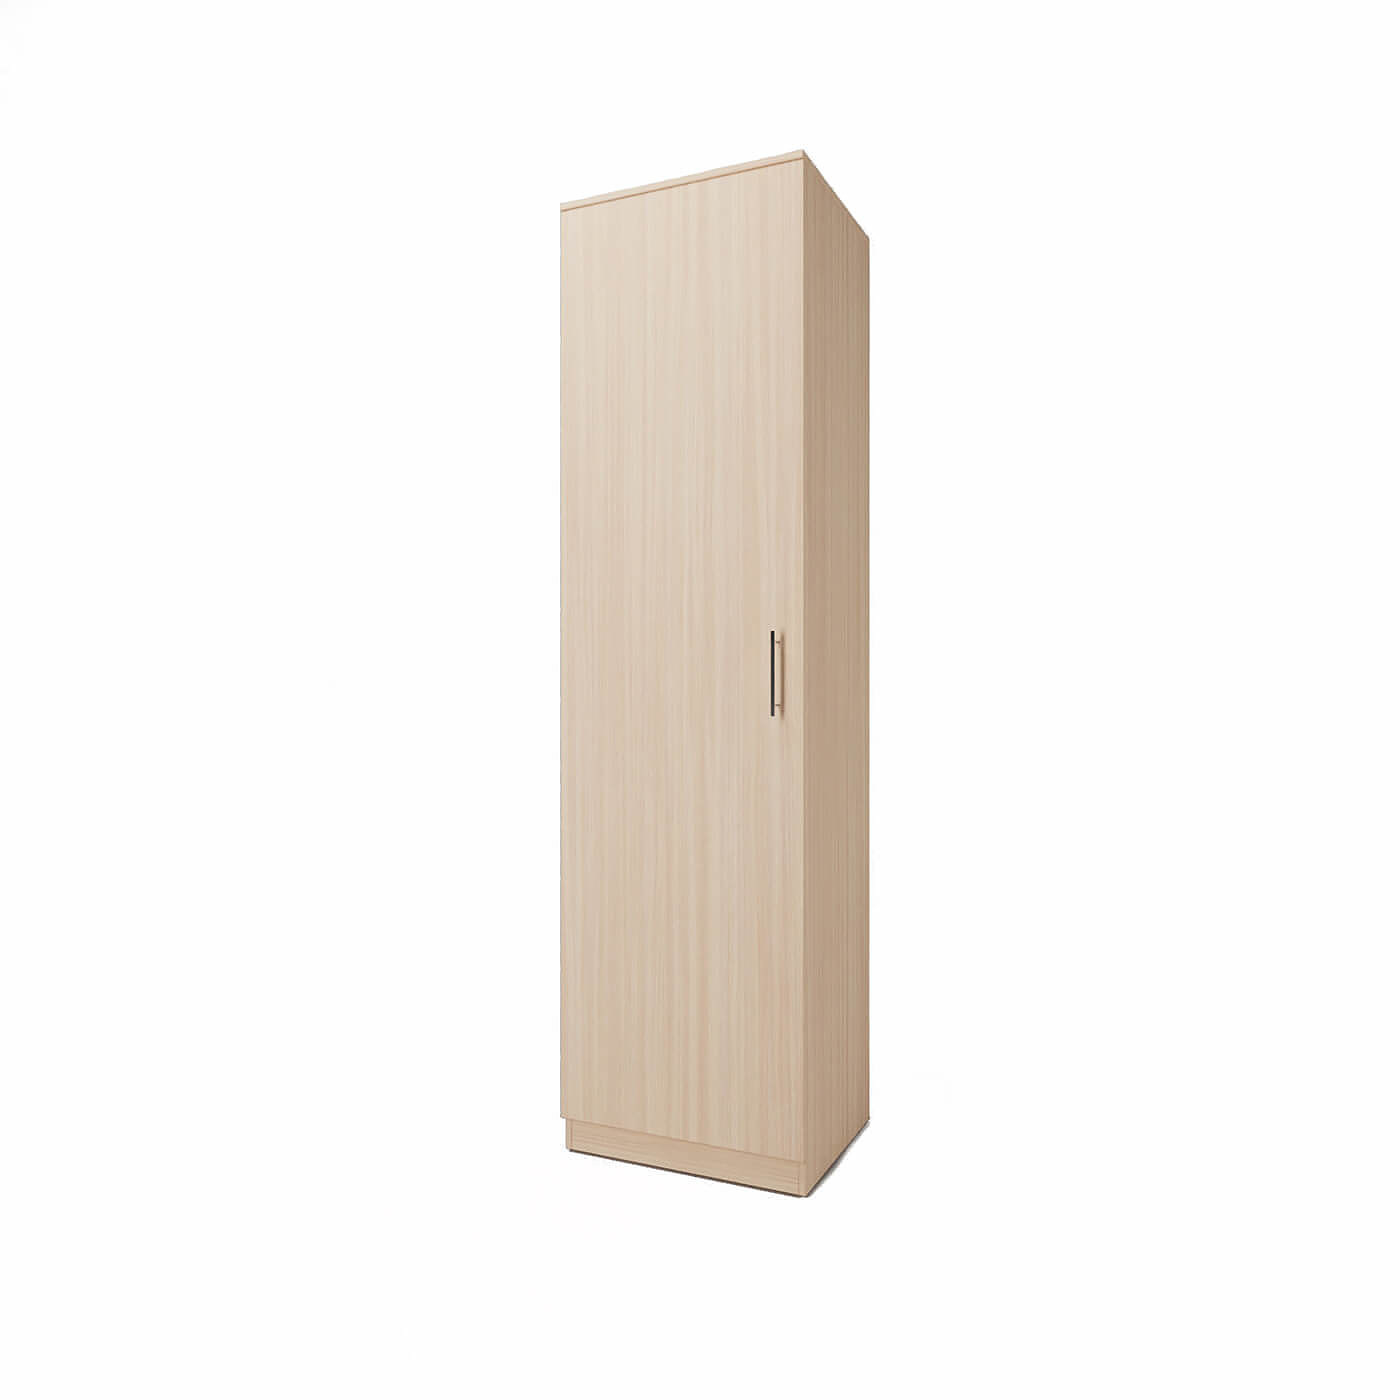 Шкаф Афина-200b современный для прихожей и спальни - фото 1 large